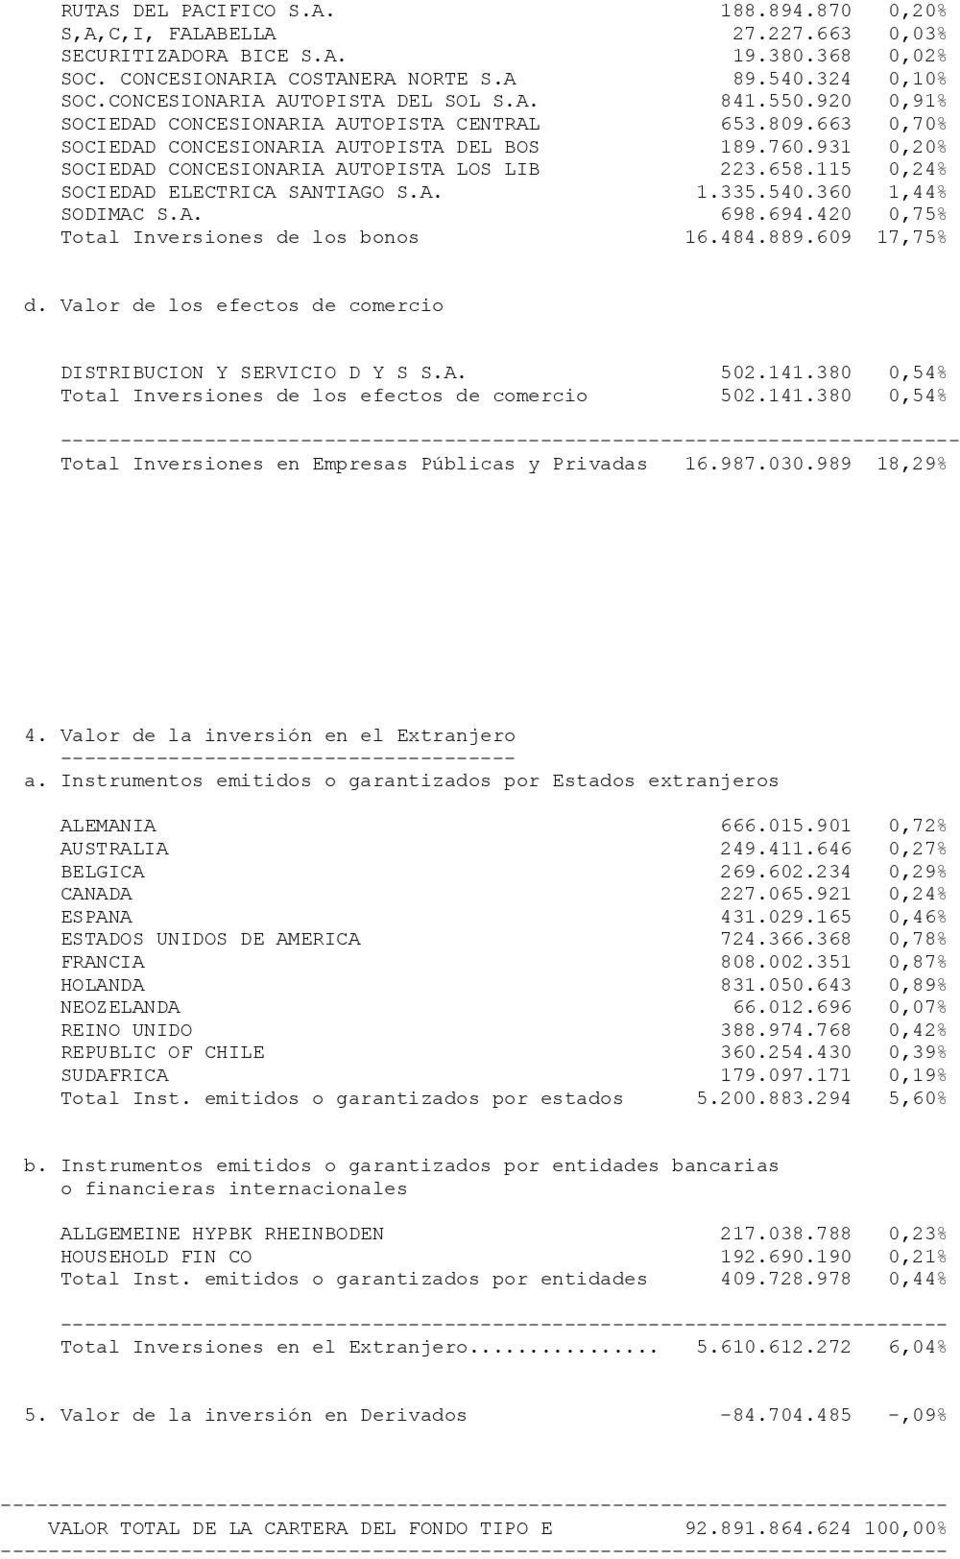 931 0,20% SOCIEDAD CONCESIONARIA AUTOPISTA LOS LIB 223.658.115 0,24% SOCIEDAD ELECTRICA SANTIAGO S.A. 1.335.540.360 1,44% SODIMAC S.A. 698.694.420 0,75% Total Inversiones de los bonos 16.484.889.